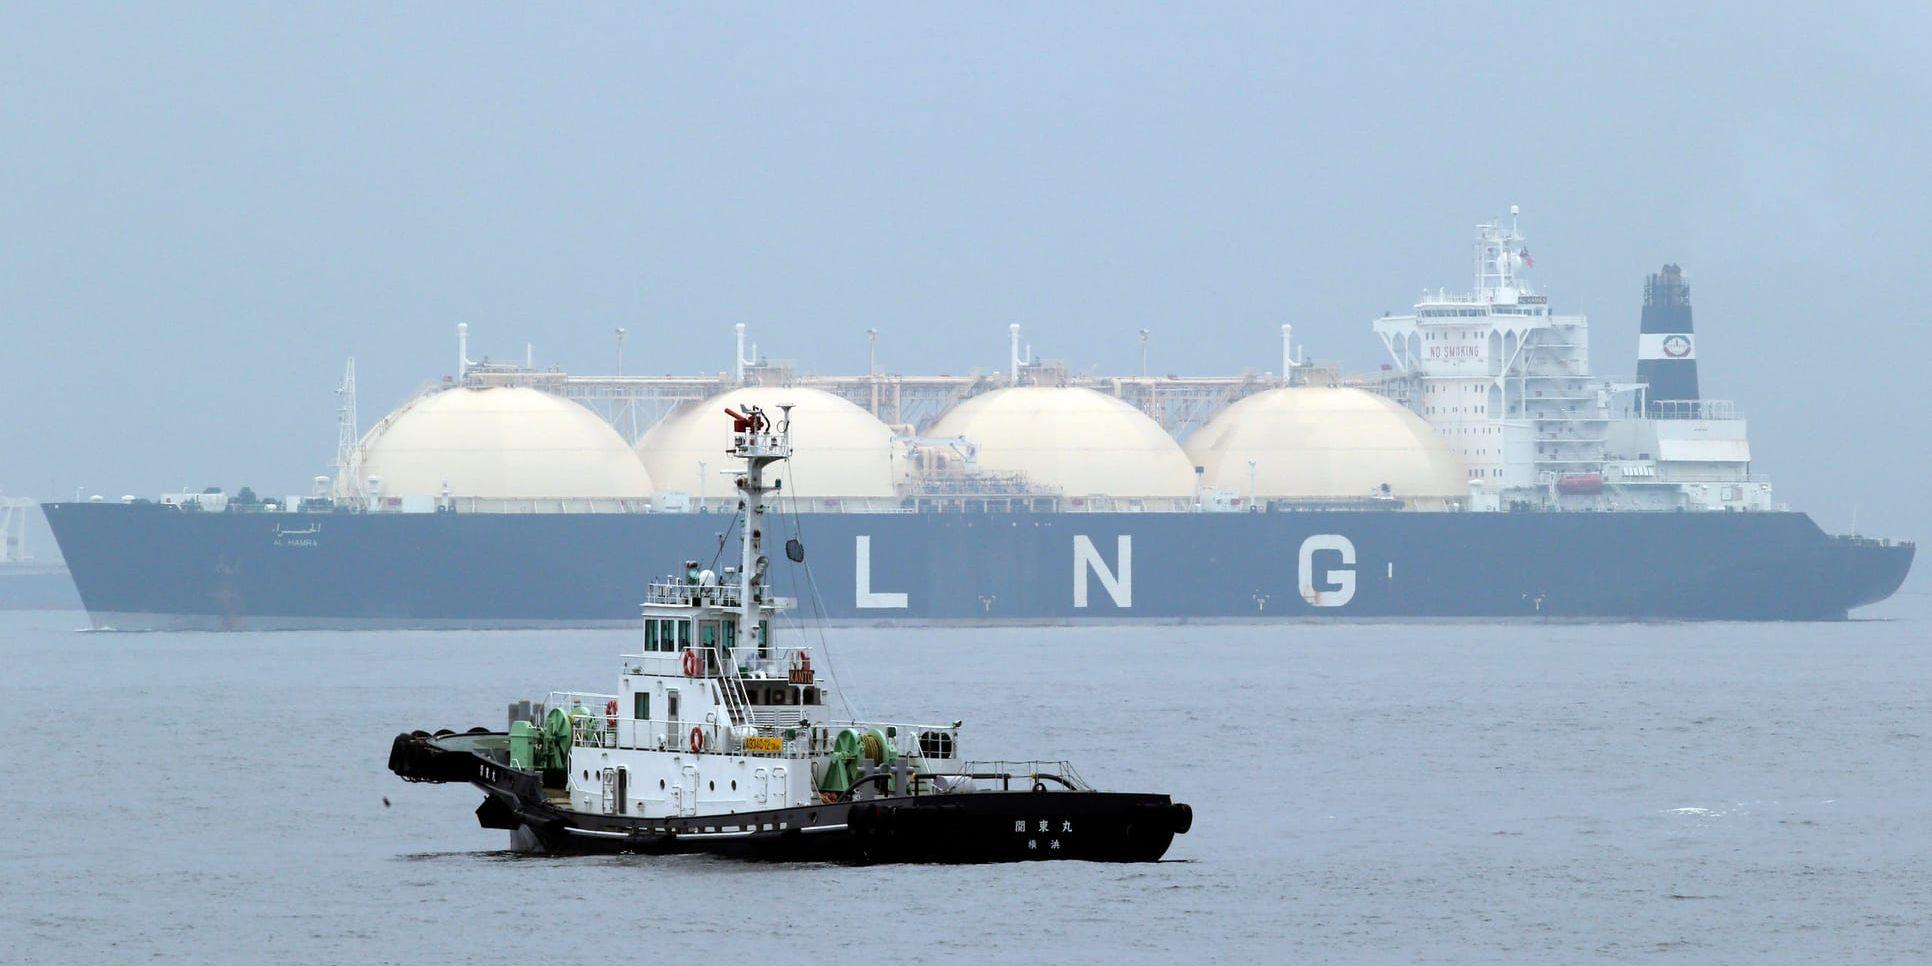 Gastankern al-Hamra vid Yokohama. Japan har länge varit storimportör av LNG, men Kina tar nu upp konkurrensen. Arkivbild.